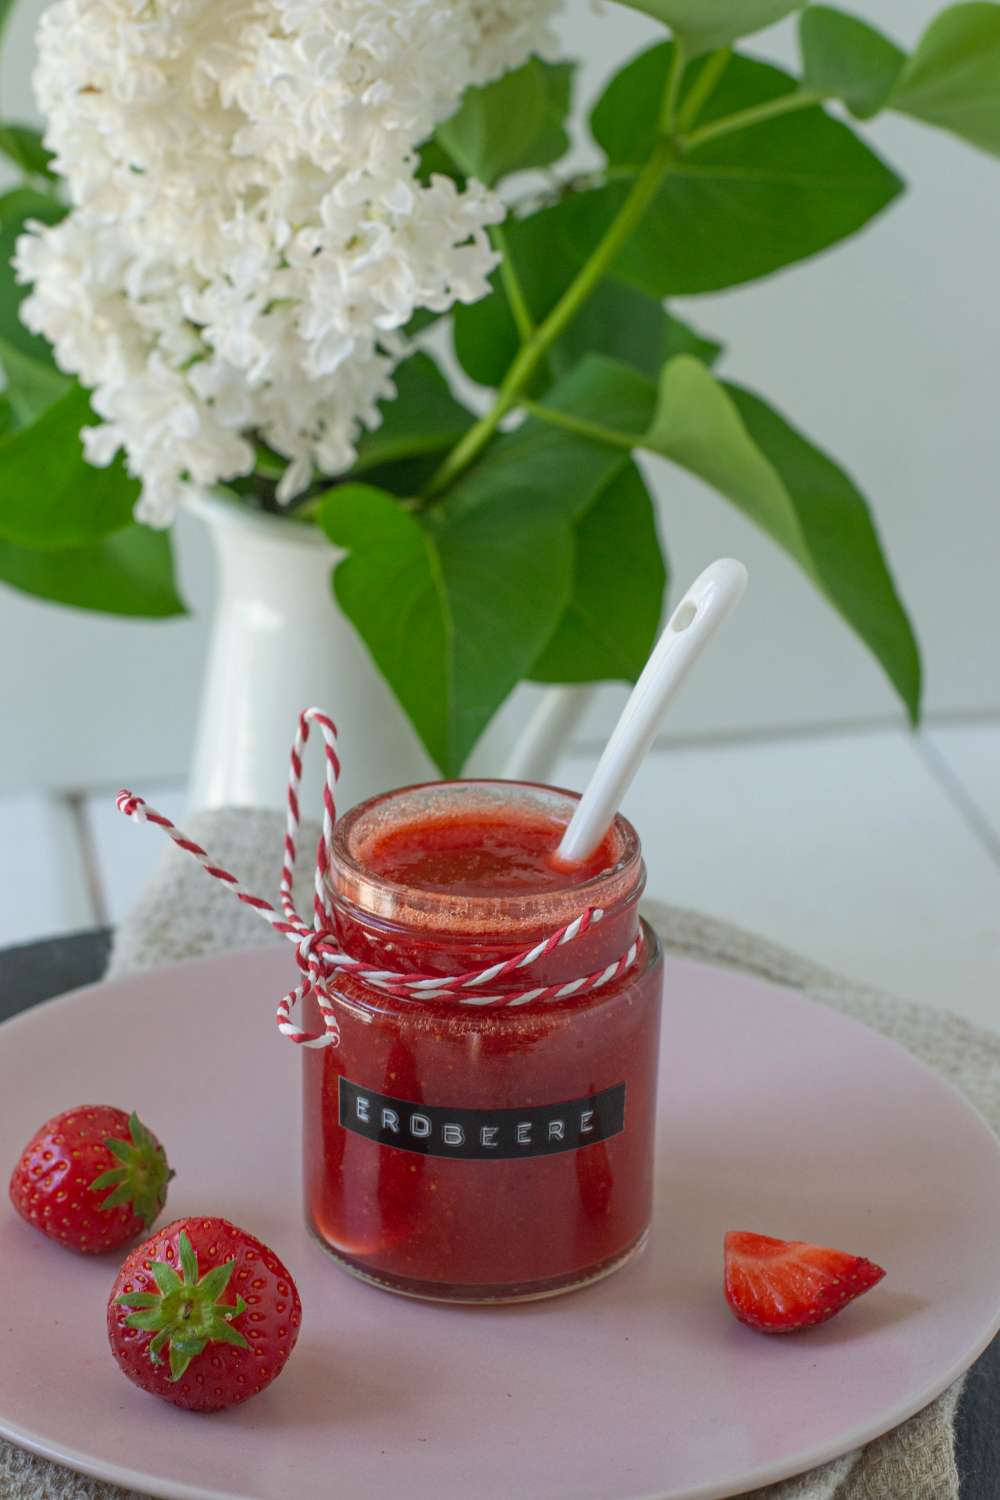 Erdbeermarmelade mit Birkenzucker zuckerfrei